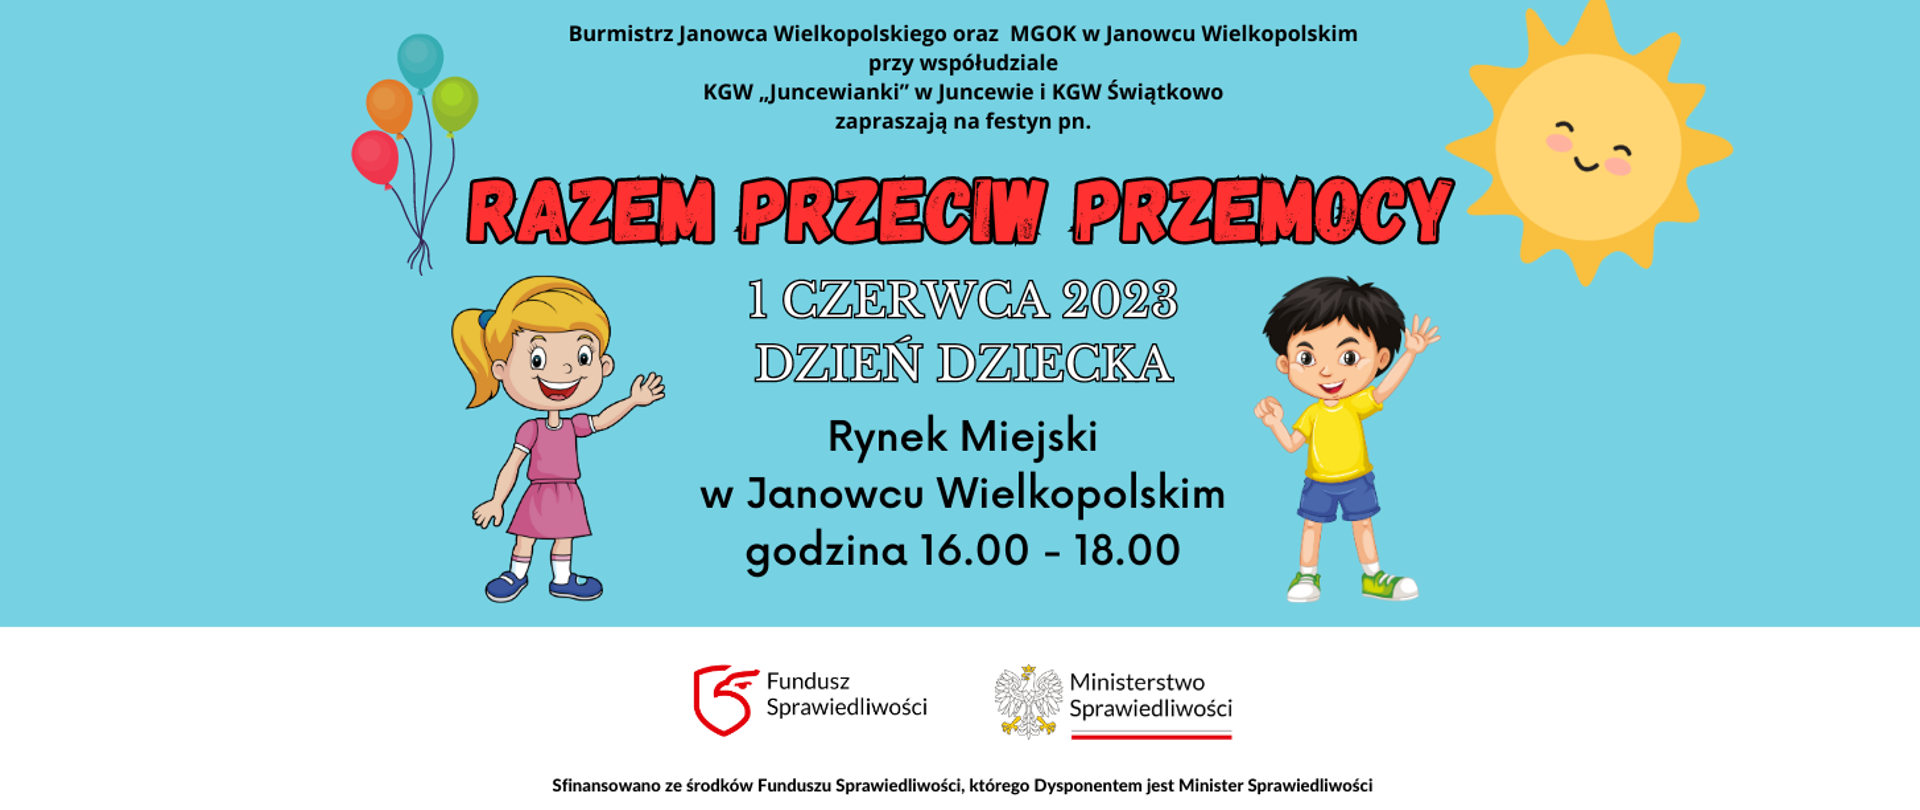 Razem przeciw przemocy odbędzie się 1 czerwca 2023 r.-Rynek Miejski w Janowcu Wielkopolskim (Plac Wolności), godz. 16:00 - 18:00 w ramach obchodów gminnego Dnia Dziecka - logotyp